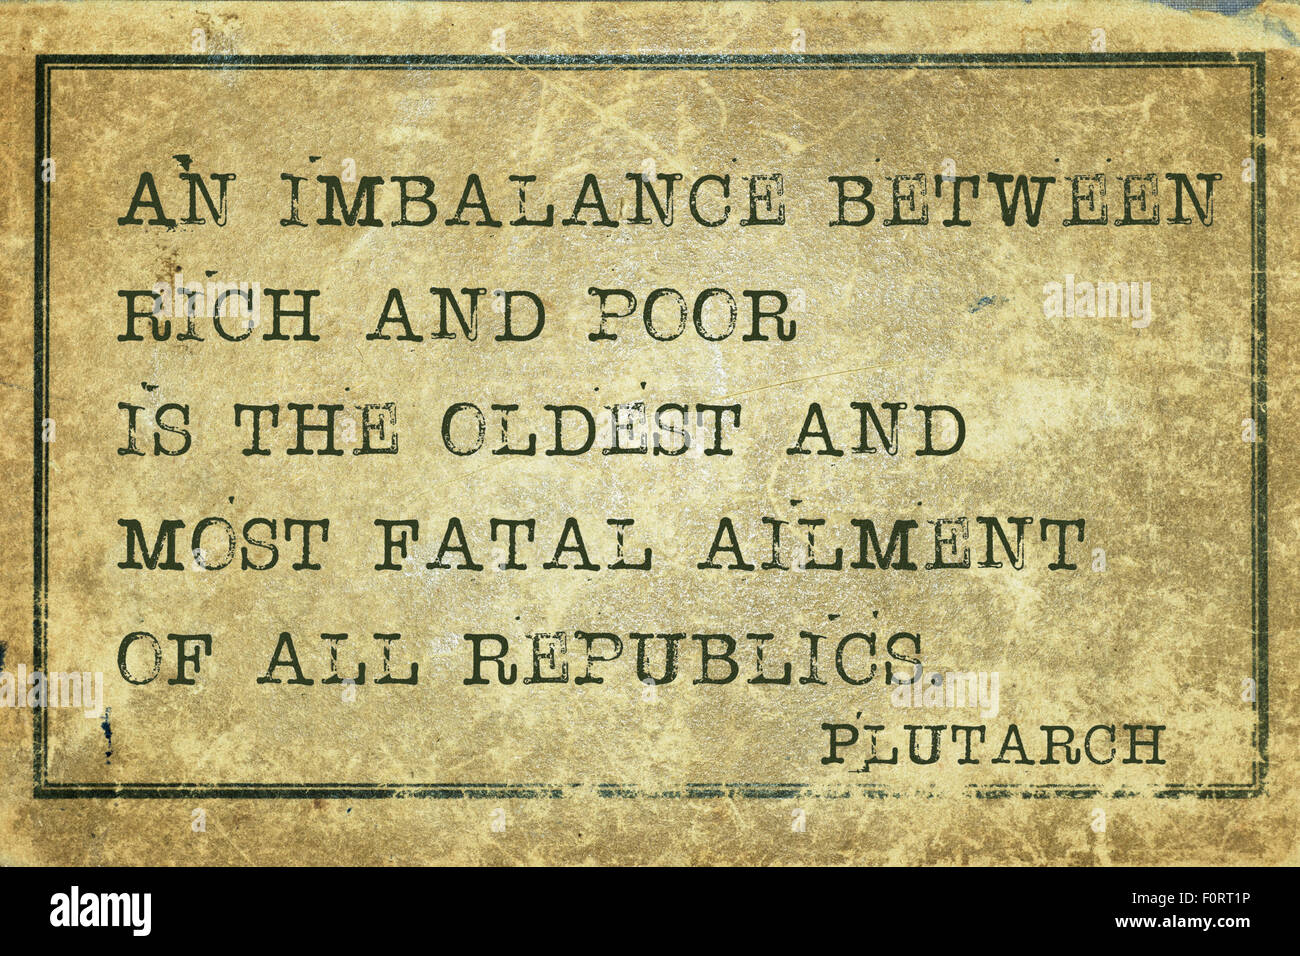 Ein Ungleichgewicht zwischen Arm und Reich - der griechische Philosoph Plutarch Zitat auf Grunge Vintage Karton gedruckt Stockfoto